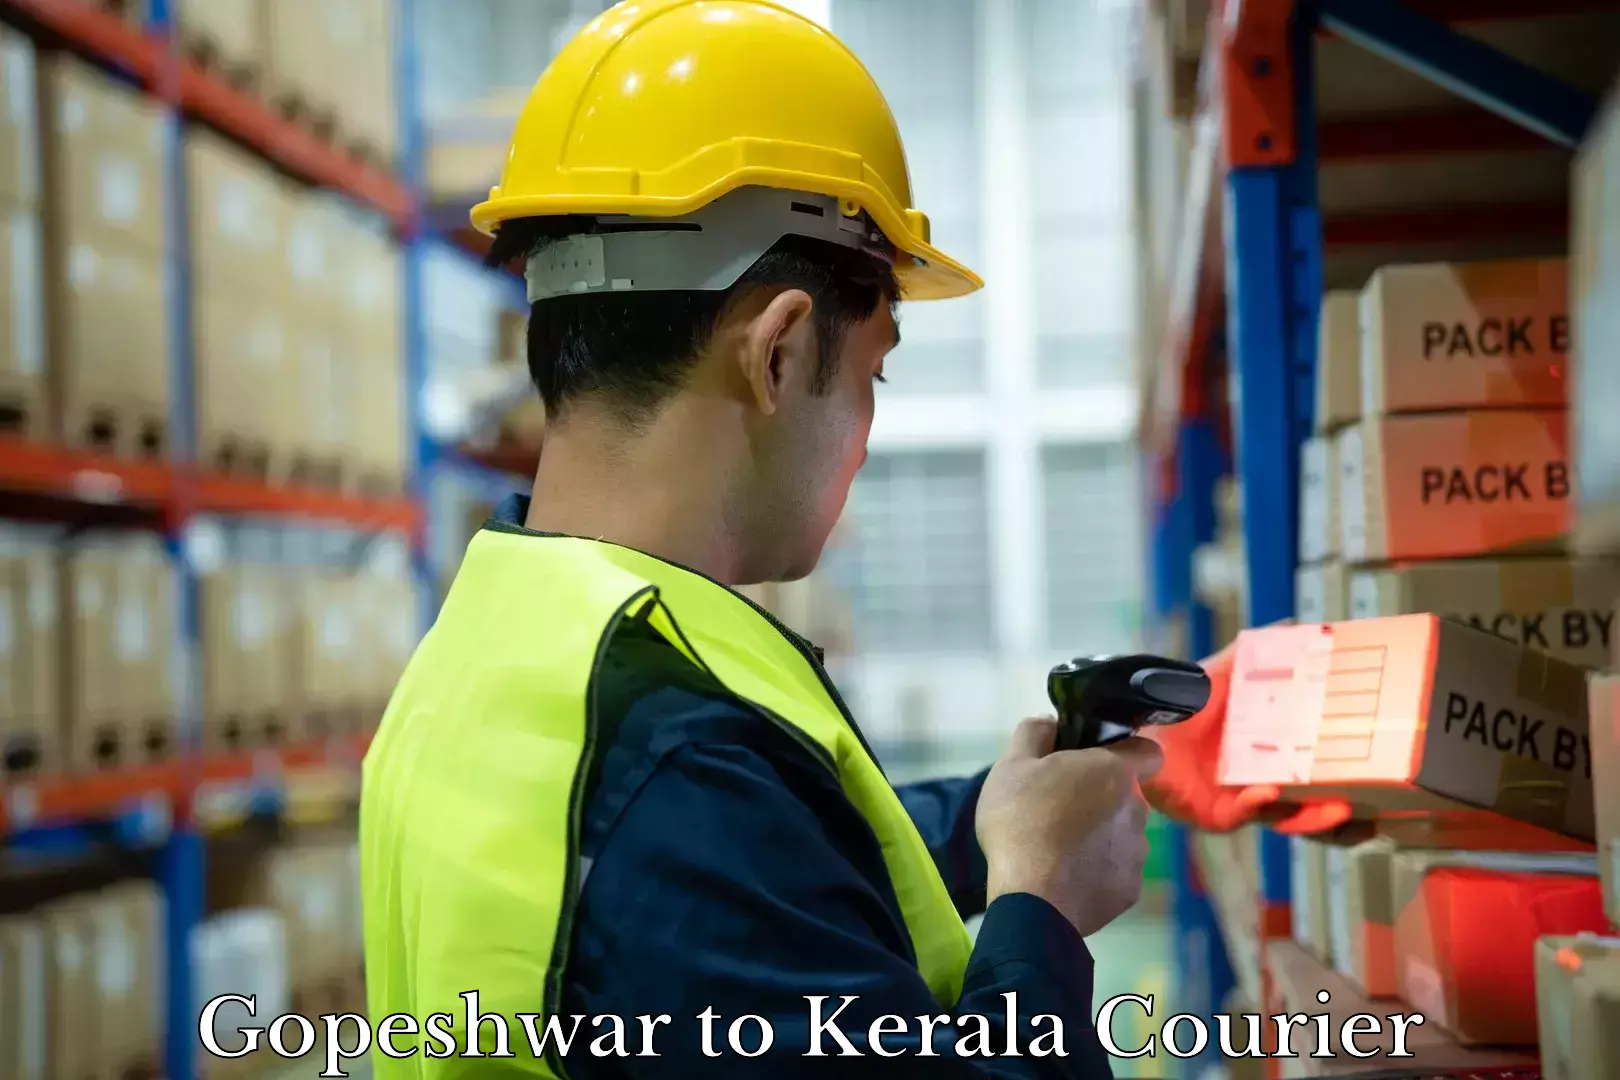 Baggage shipping experts Gopeshwar to Kerala